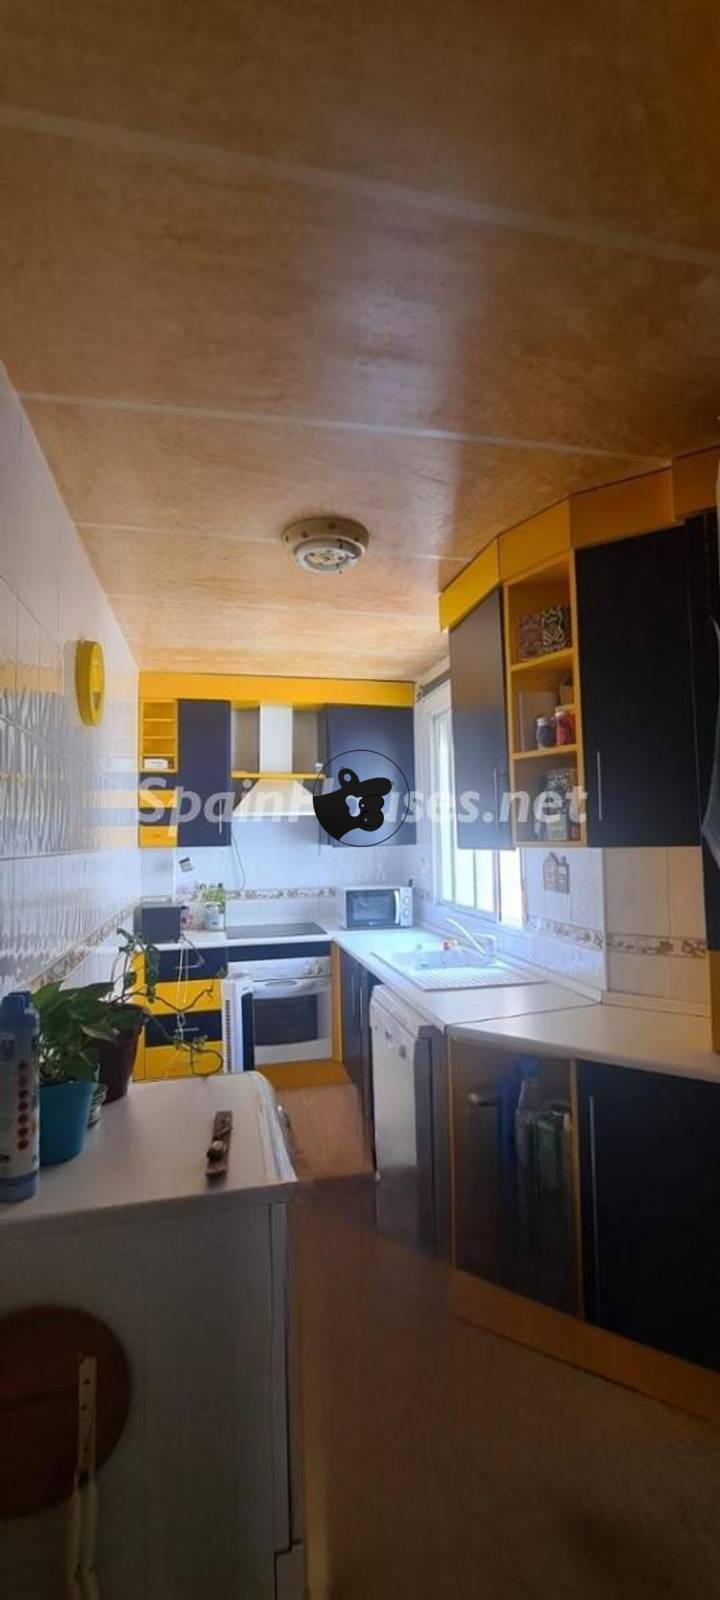 3 bedrooms apartment in Ogijares, Granada, Spain